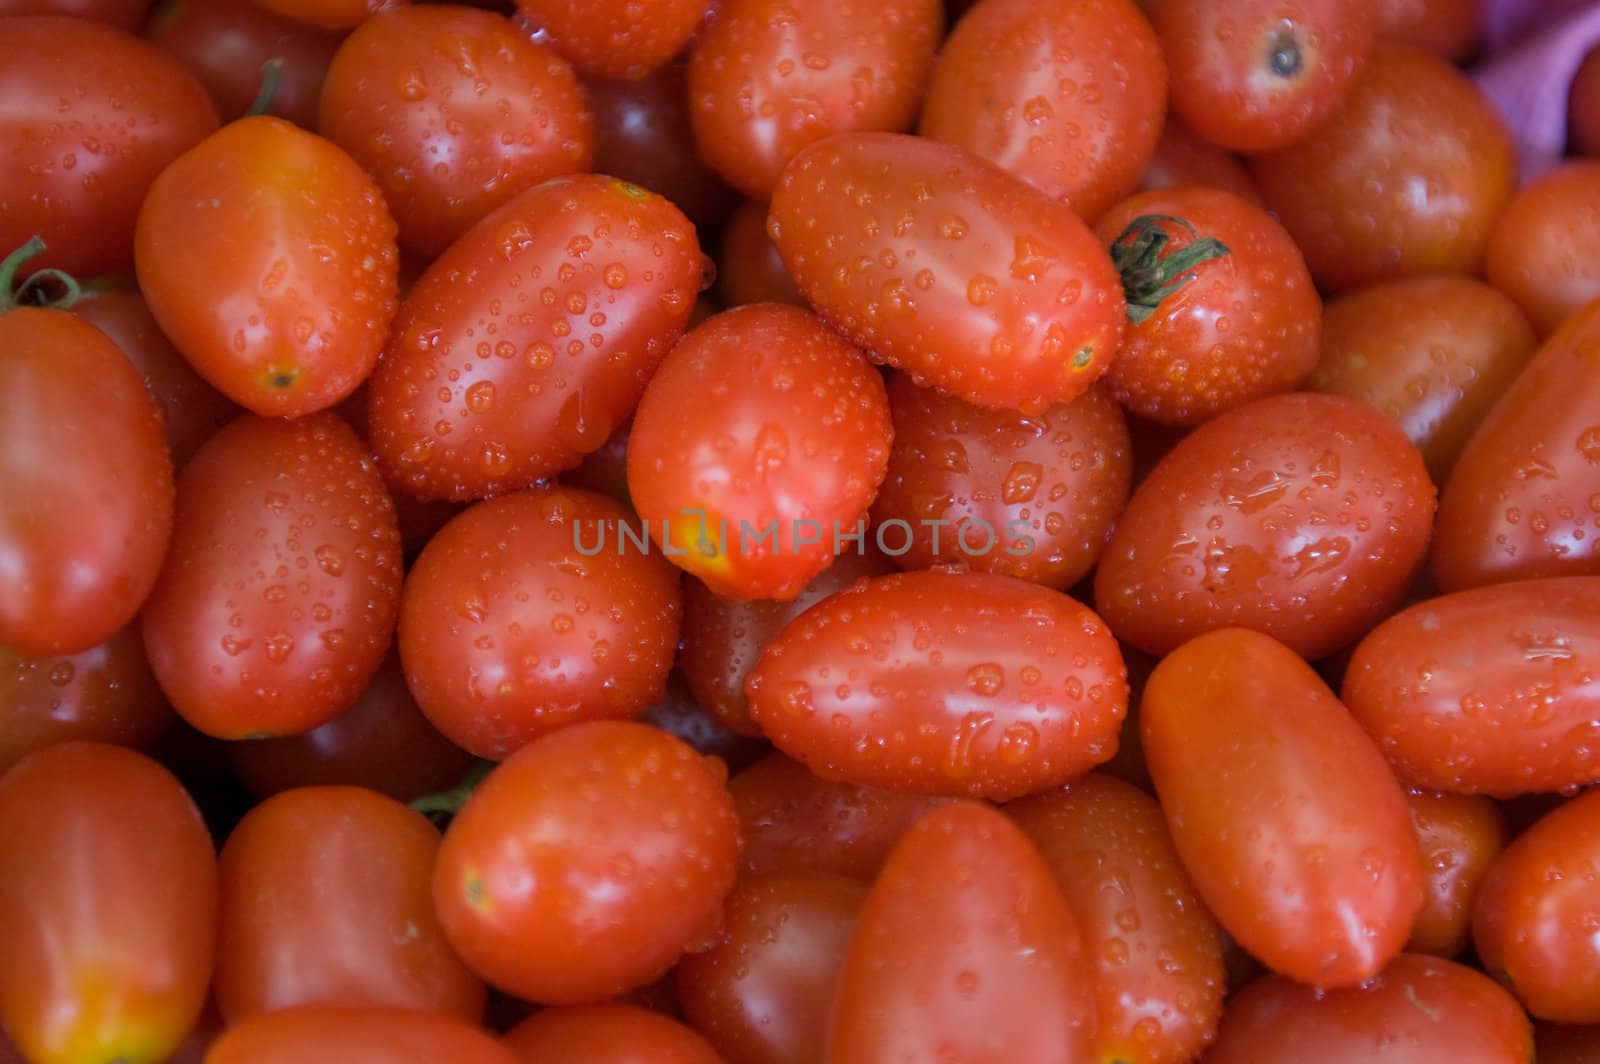 tomatoes at food market